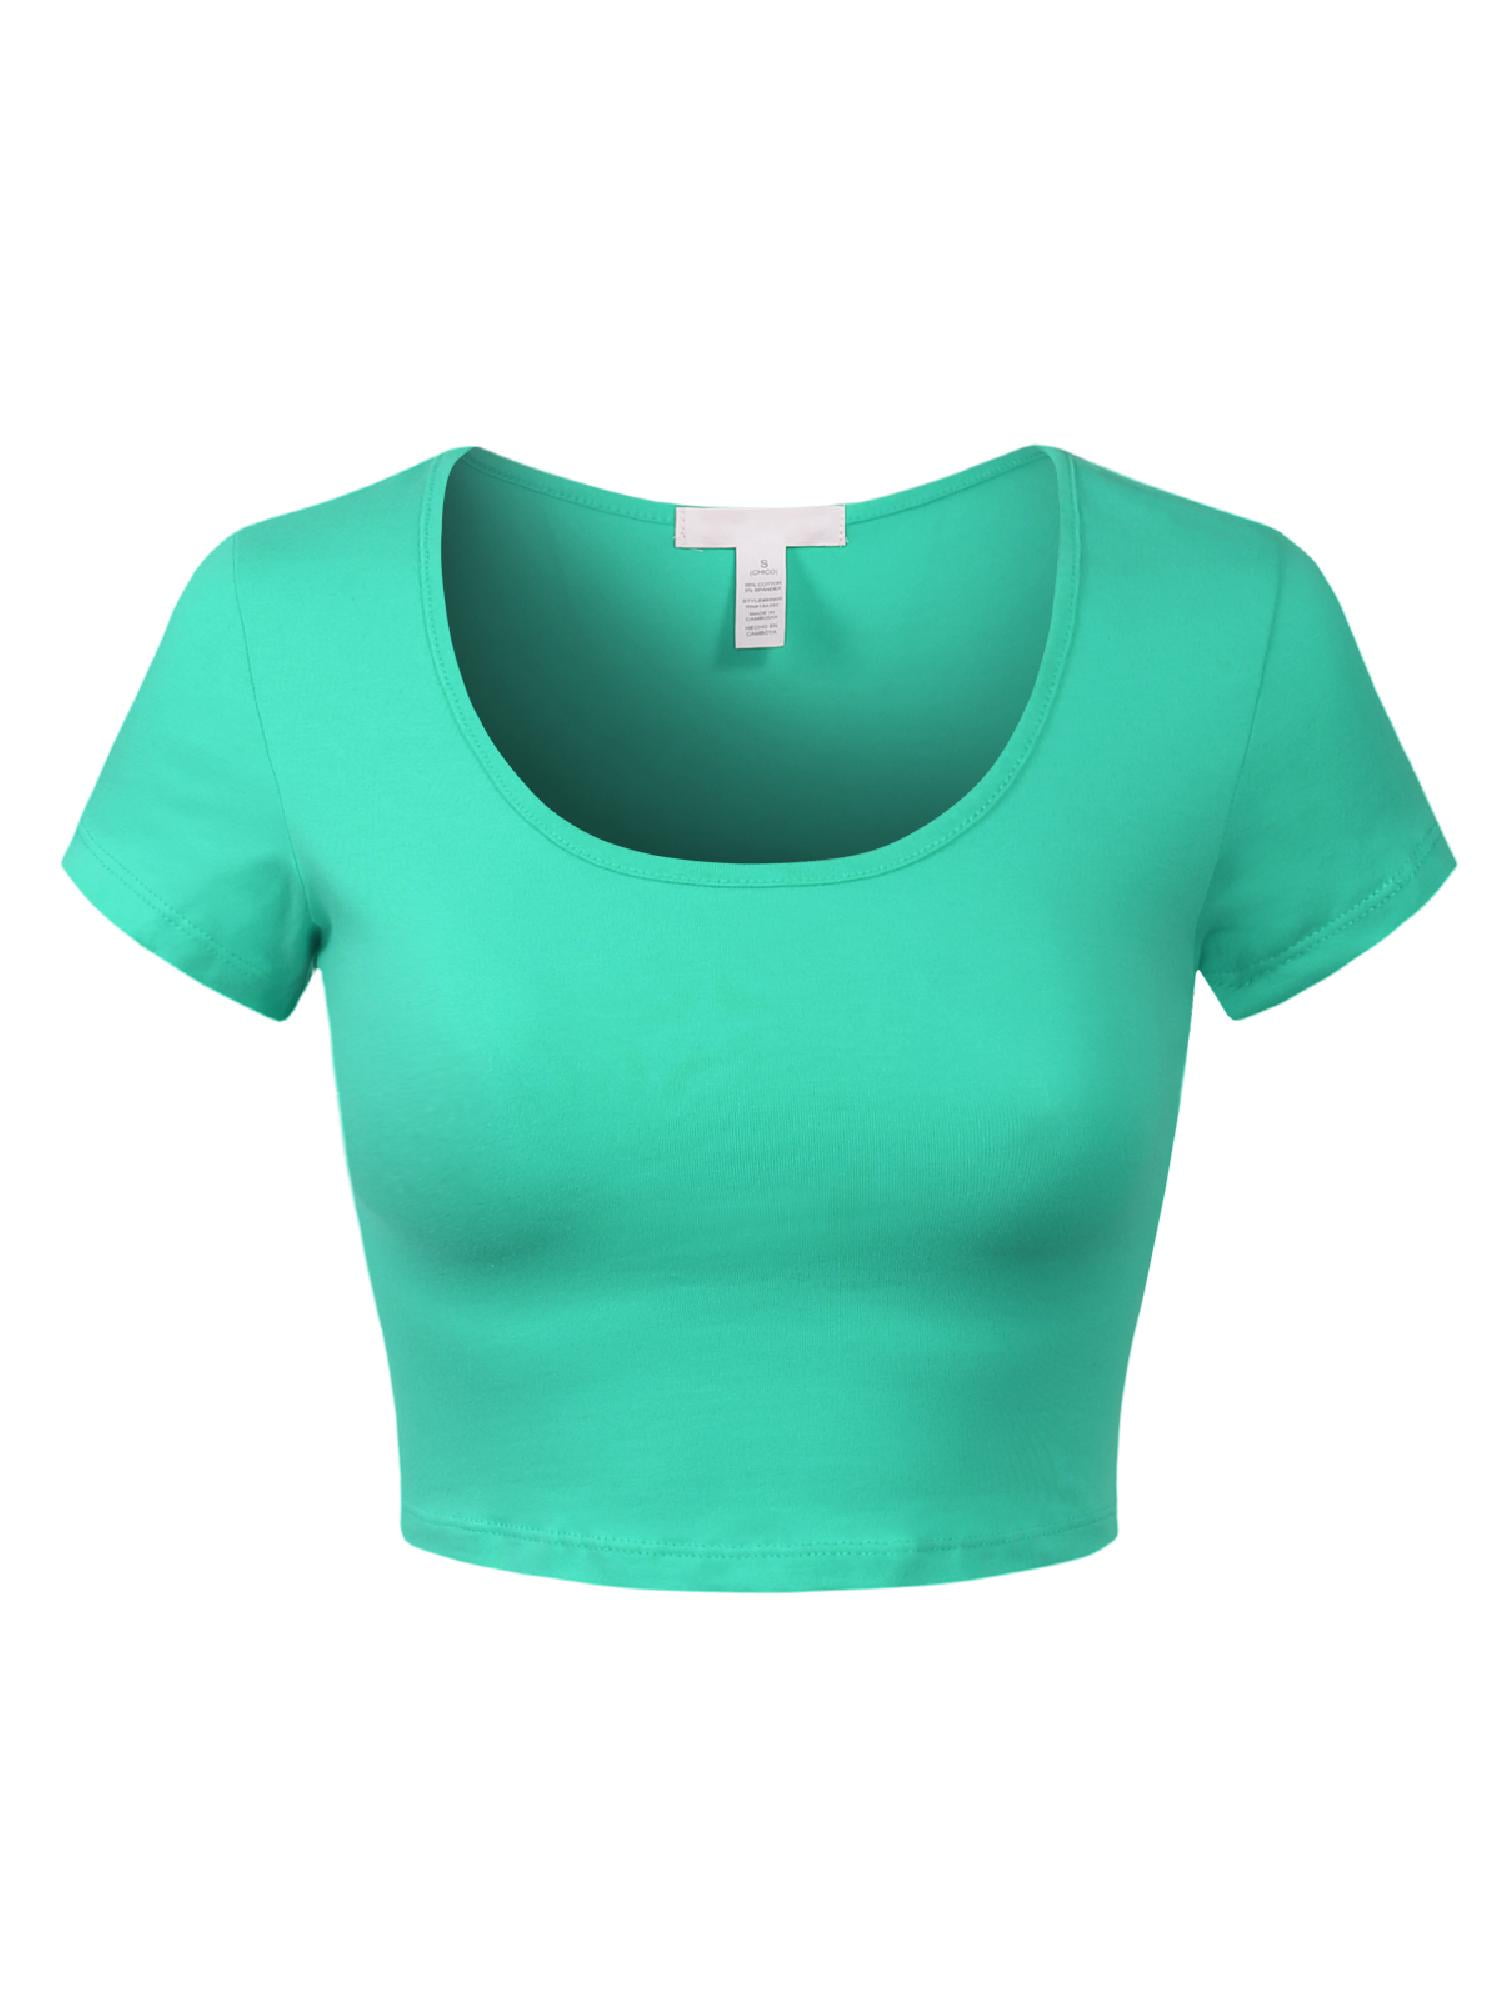 MixMatchy Women's Cotton Solid Scoop Neck Cap Sleeve Crop Top Shirt